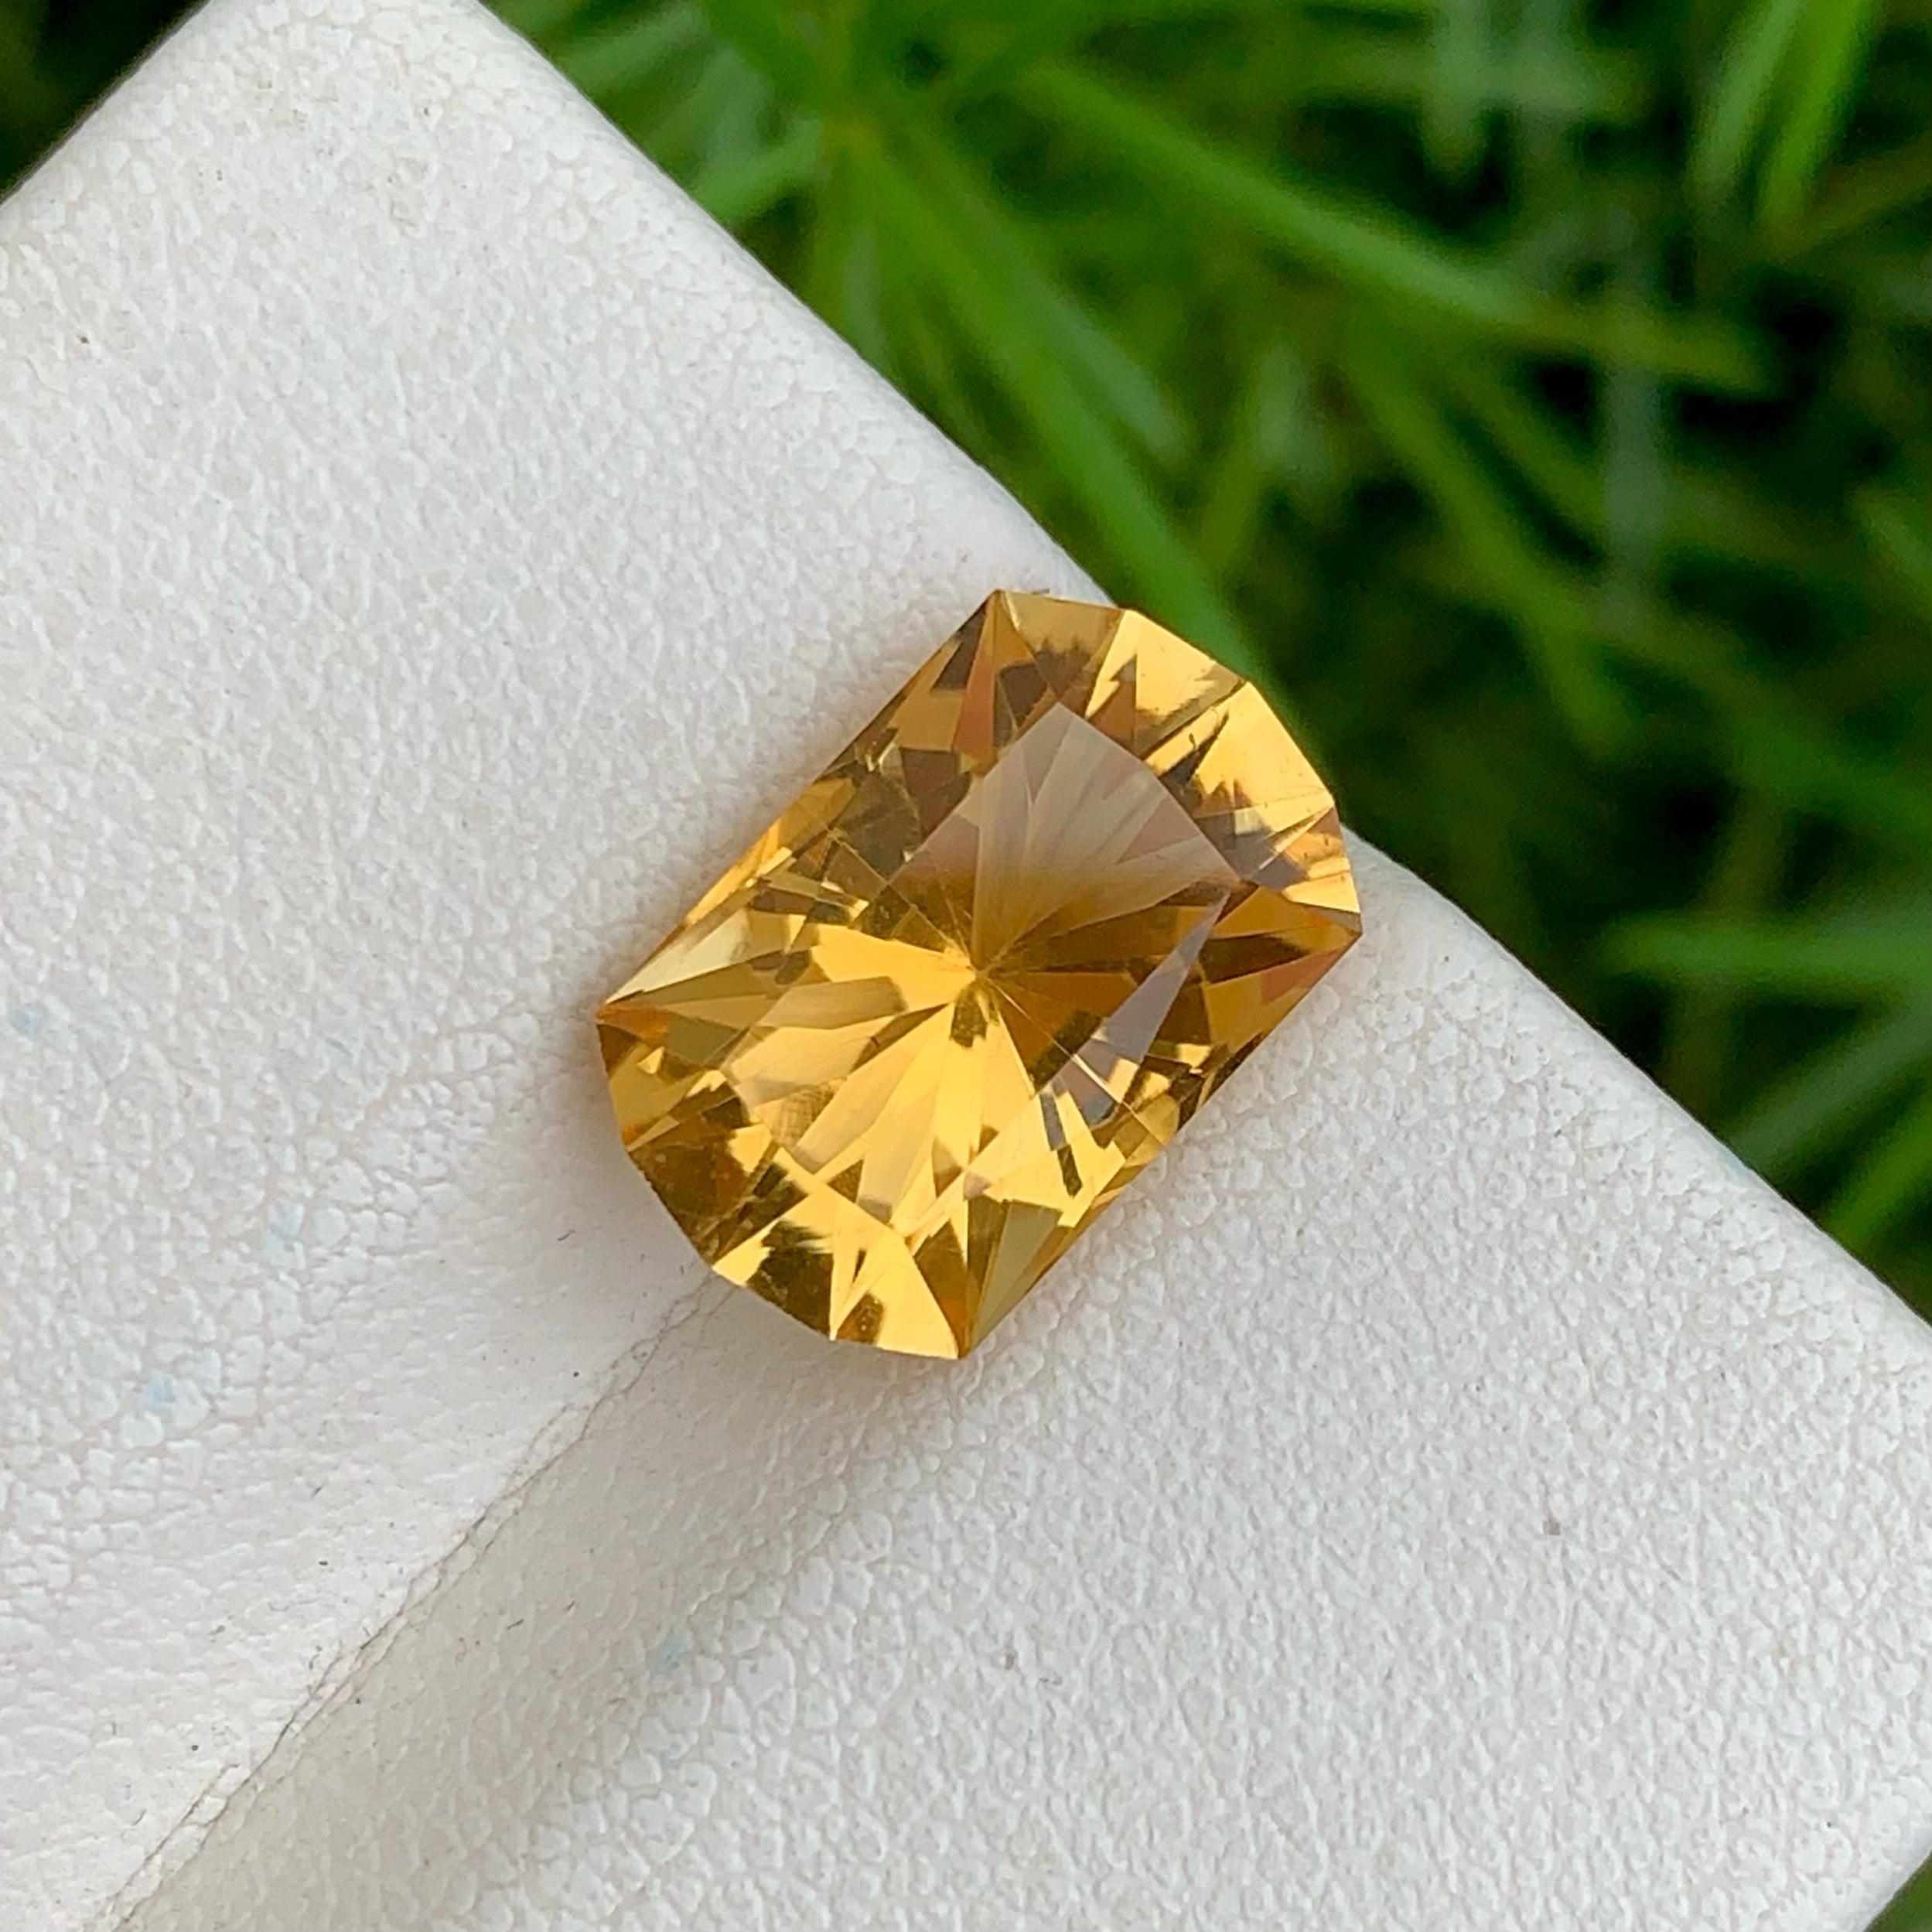 Marvelous Natural Yellow Citrin Edelstein von 4,30 Karat aus Afrika hat einen wunderbaren Schliff in einem Custom Form, unglaubliche gelbe Farbe. Große Brillanz. Dieses Schmuckstück ist absolut augenrein.

Informationen zum